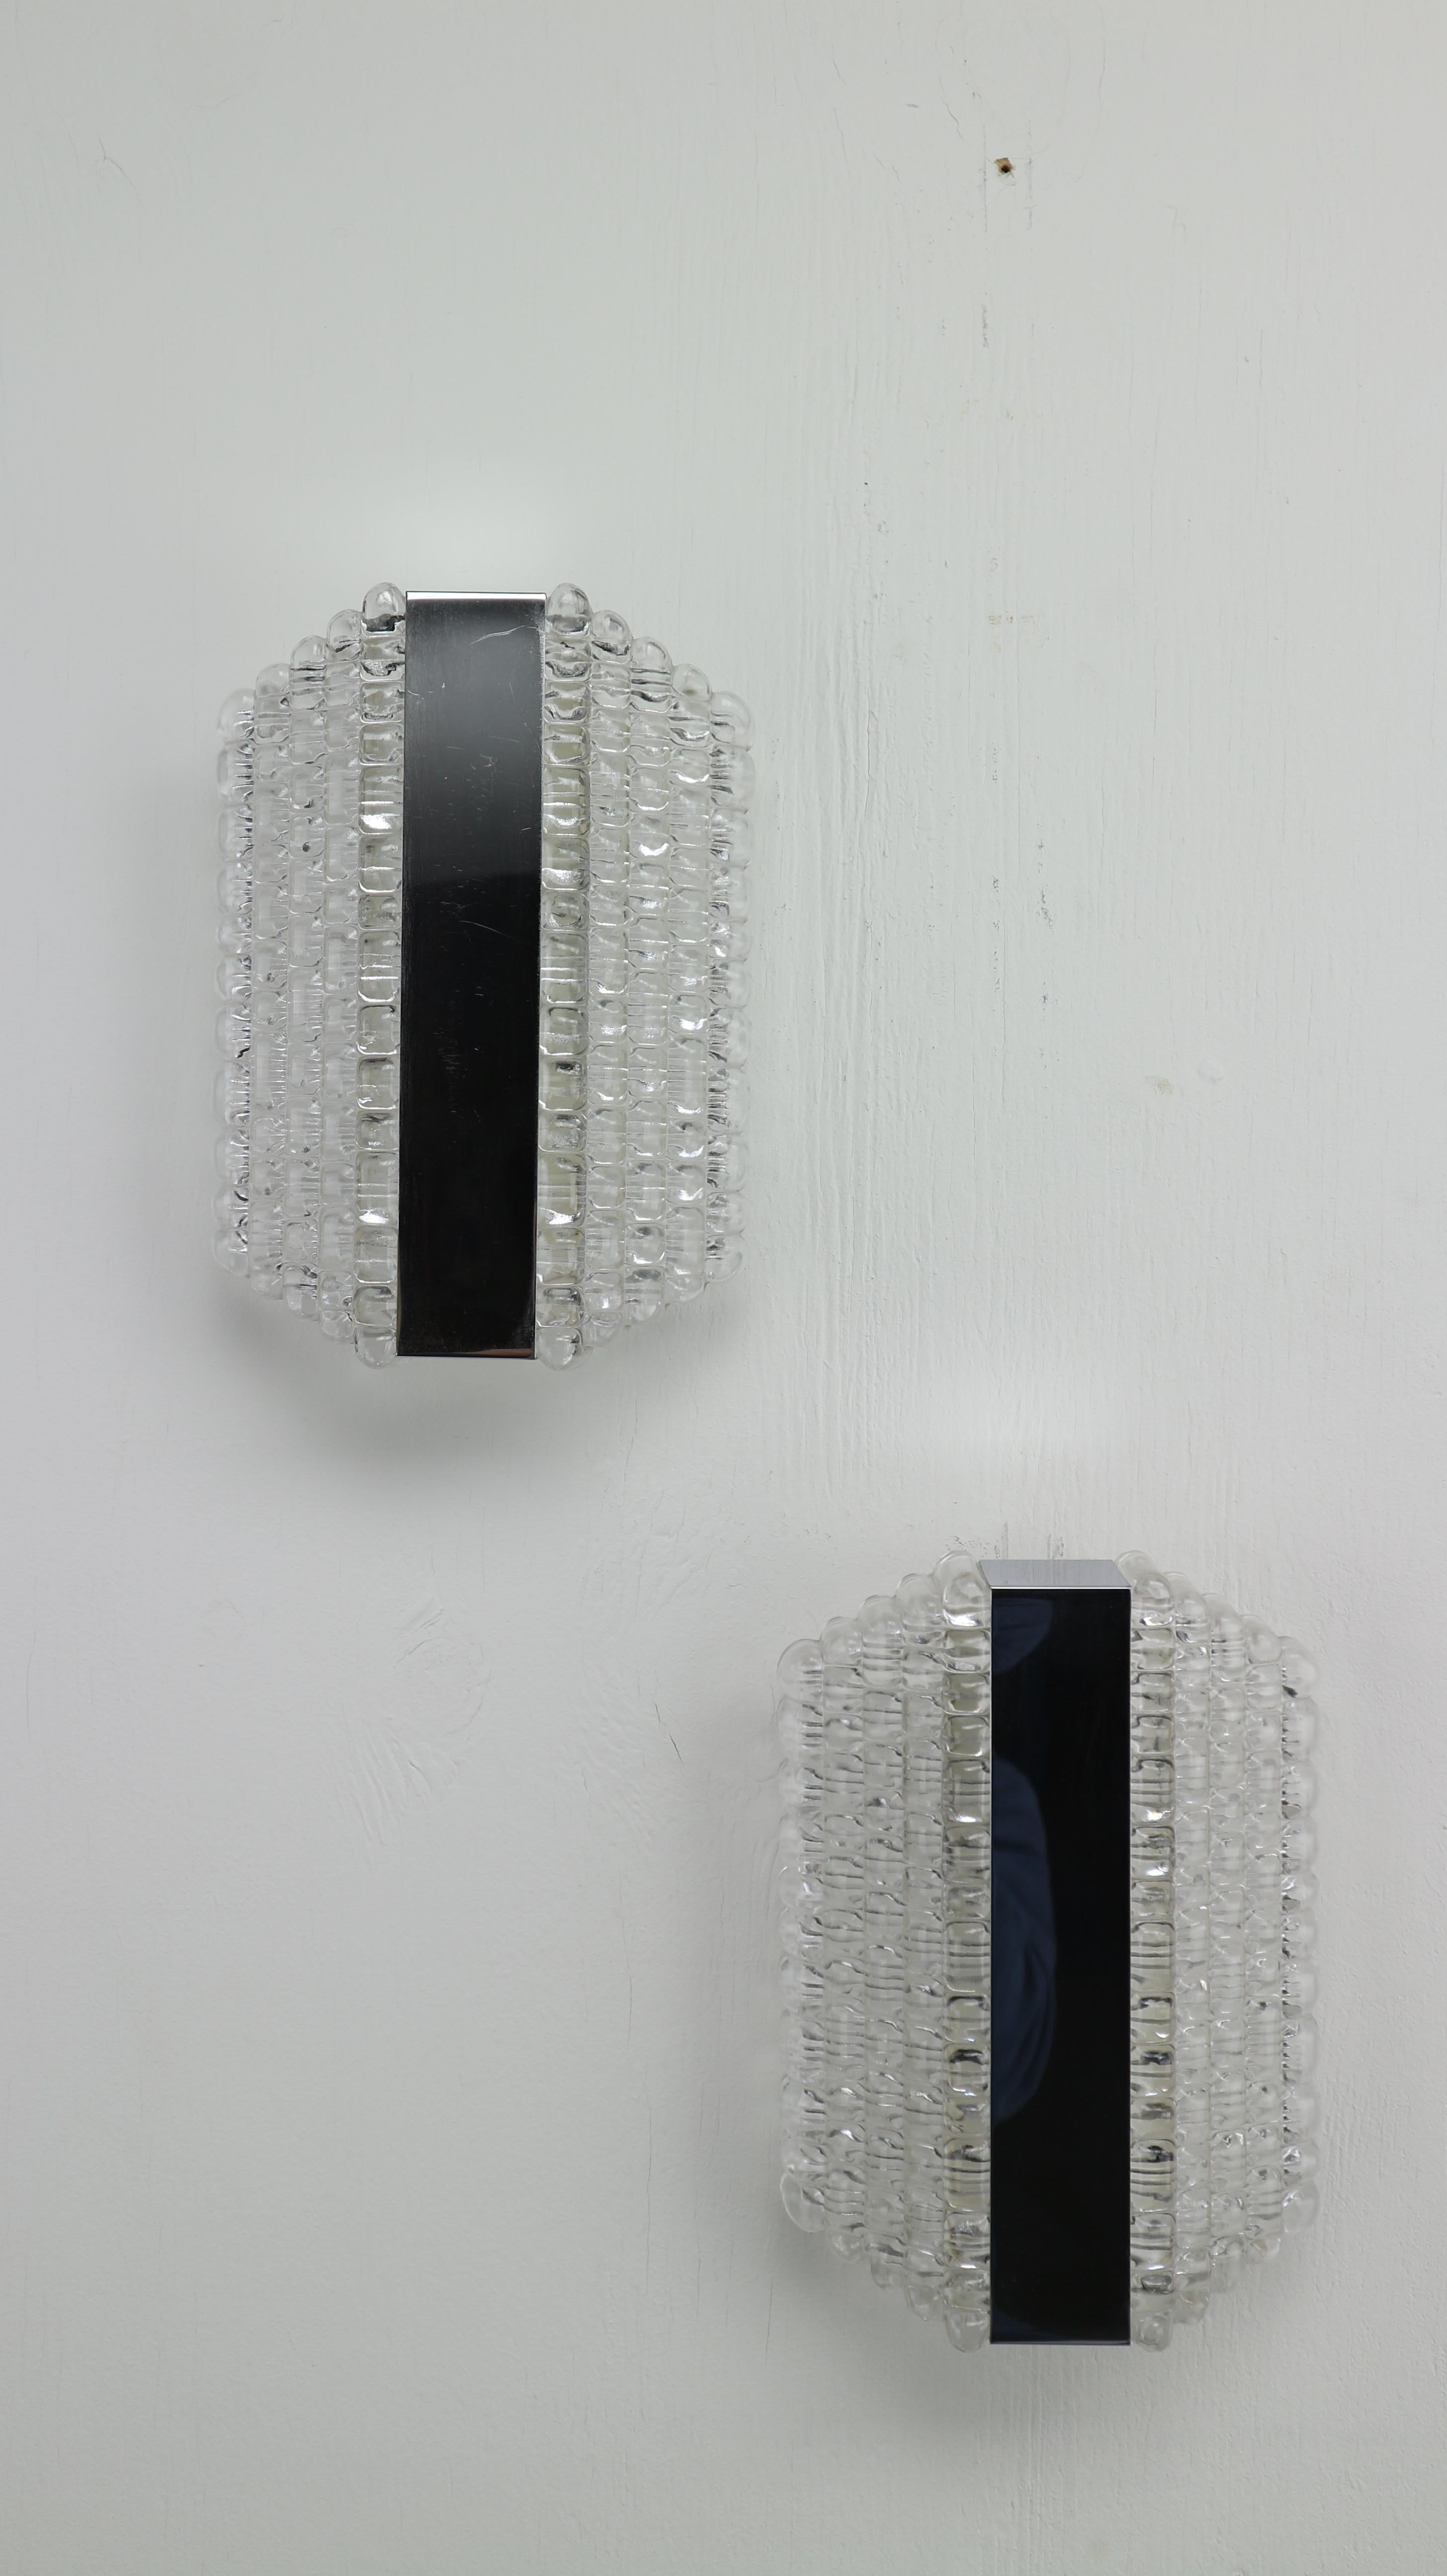 Satz von zwei Hängelampen, entworfen von Kaiser Leuchten in den 1960er Jahren.
Die Spitzen arbeiten in Ordnung und geben eine warme Aufhellung.
Verchromte Spiegeldetails und Kristallglas.